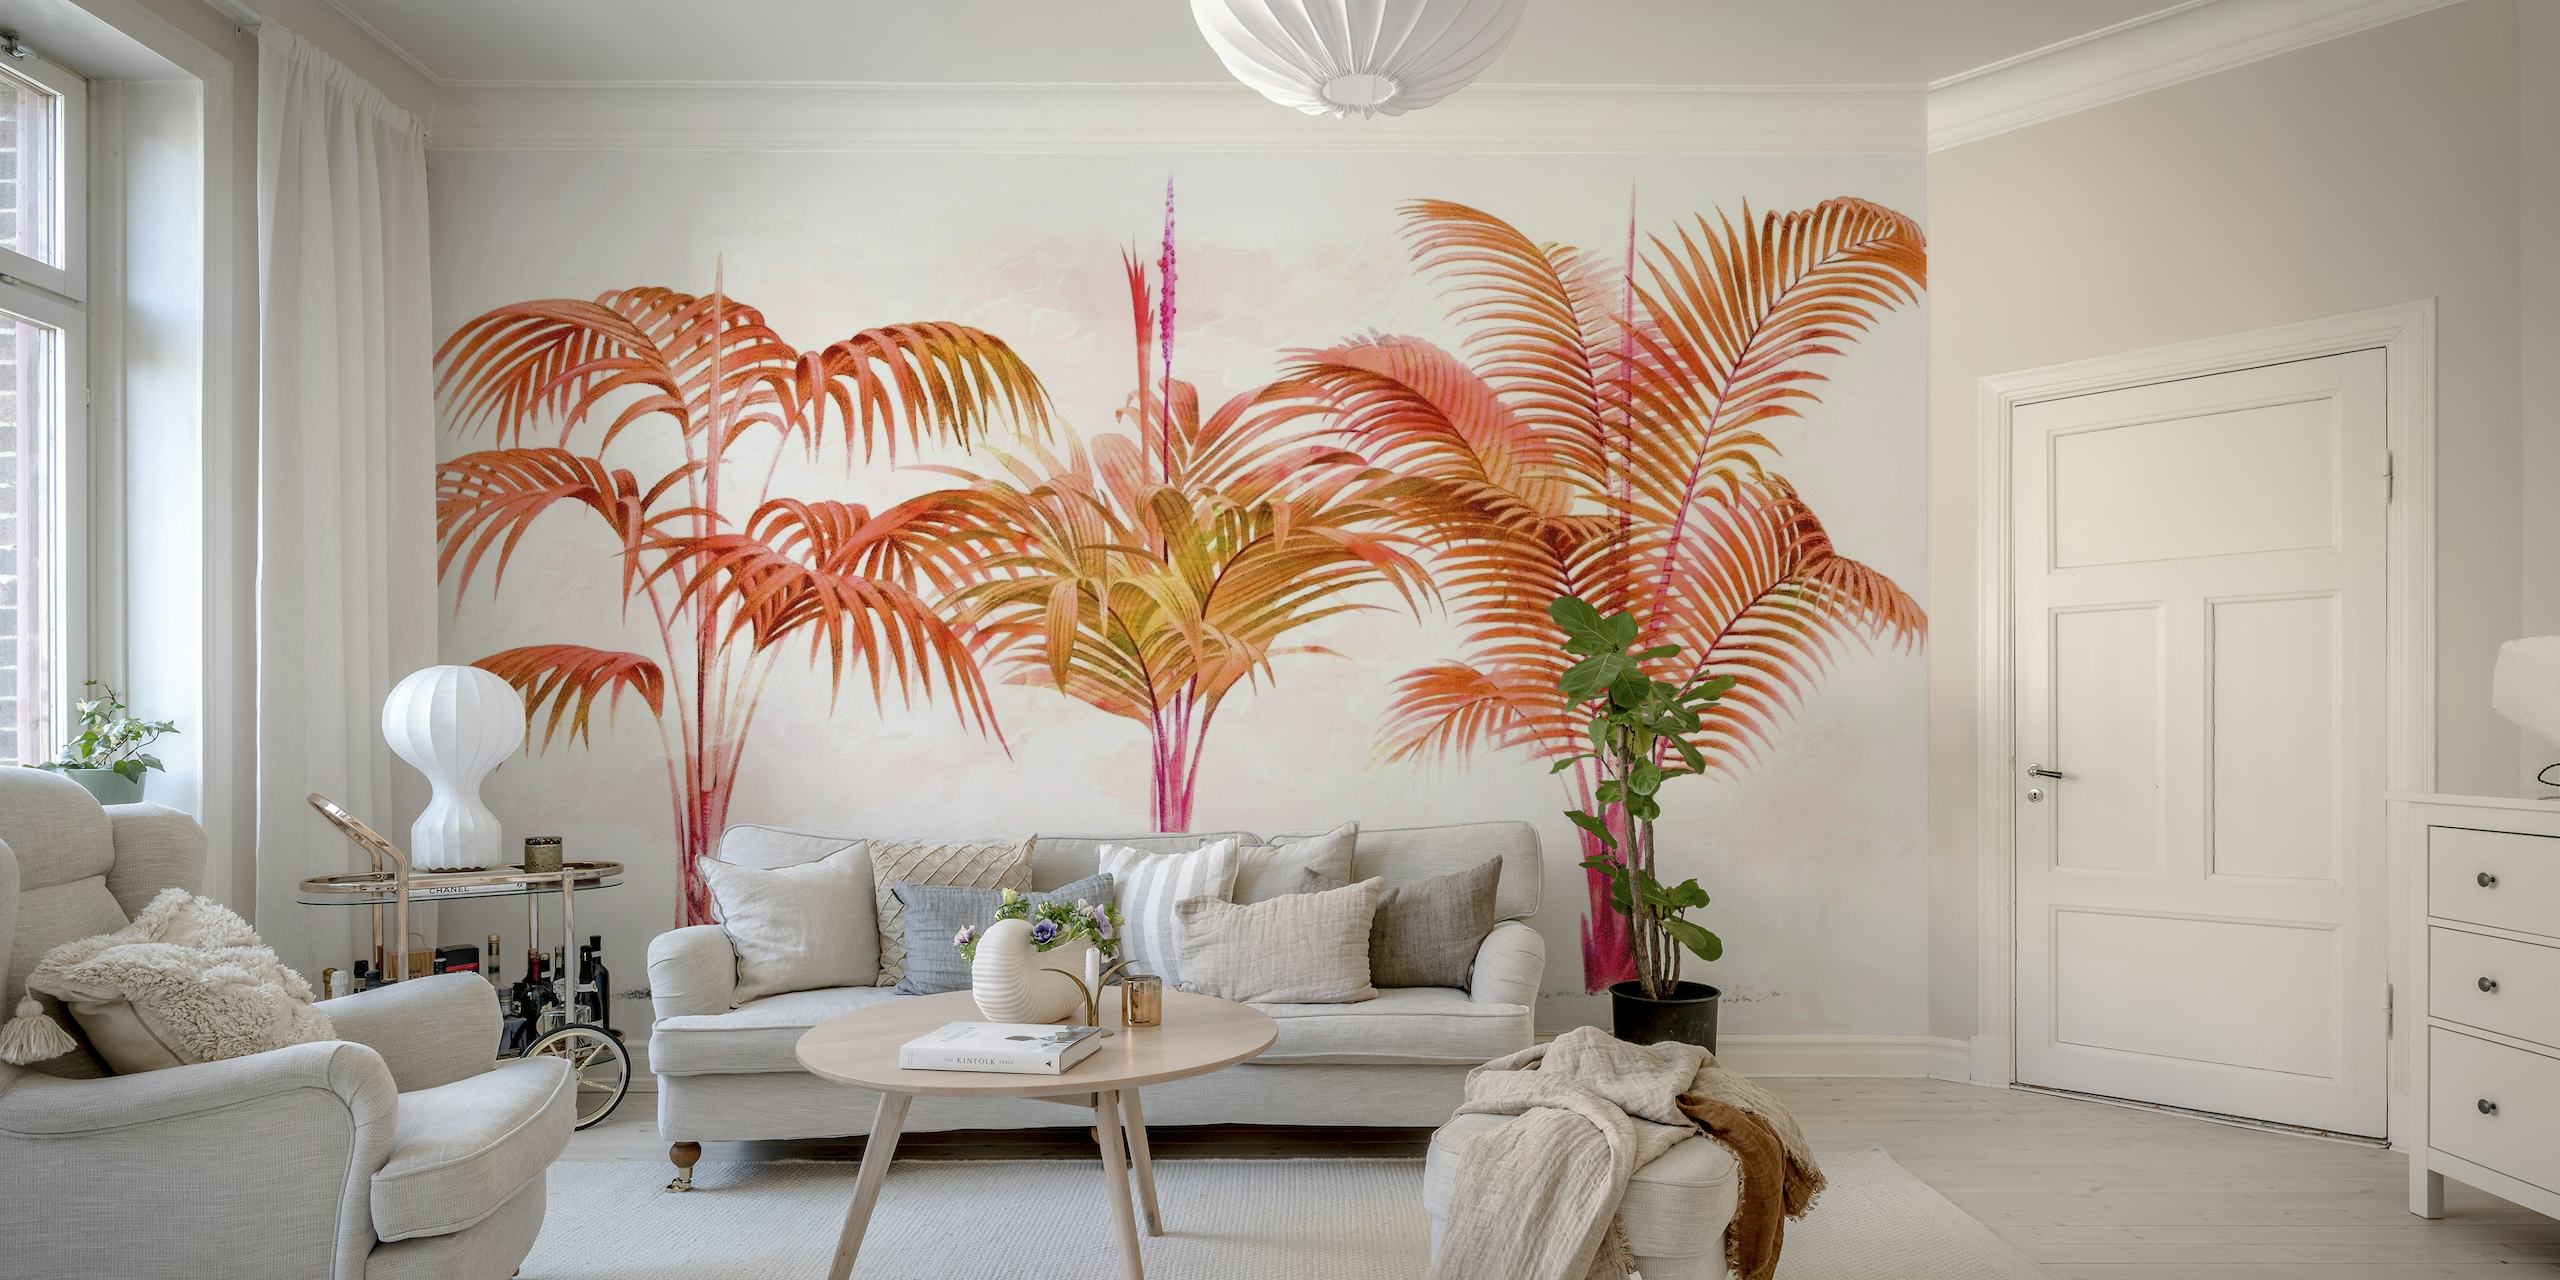 Rustgevende palmboom muurschildering in warme tinten.